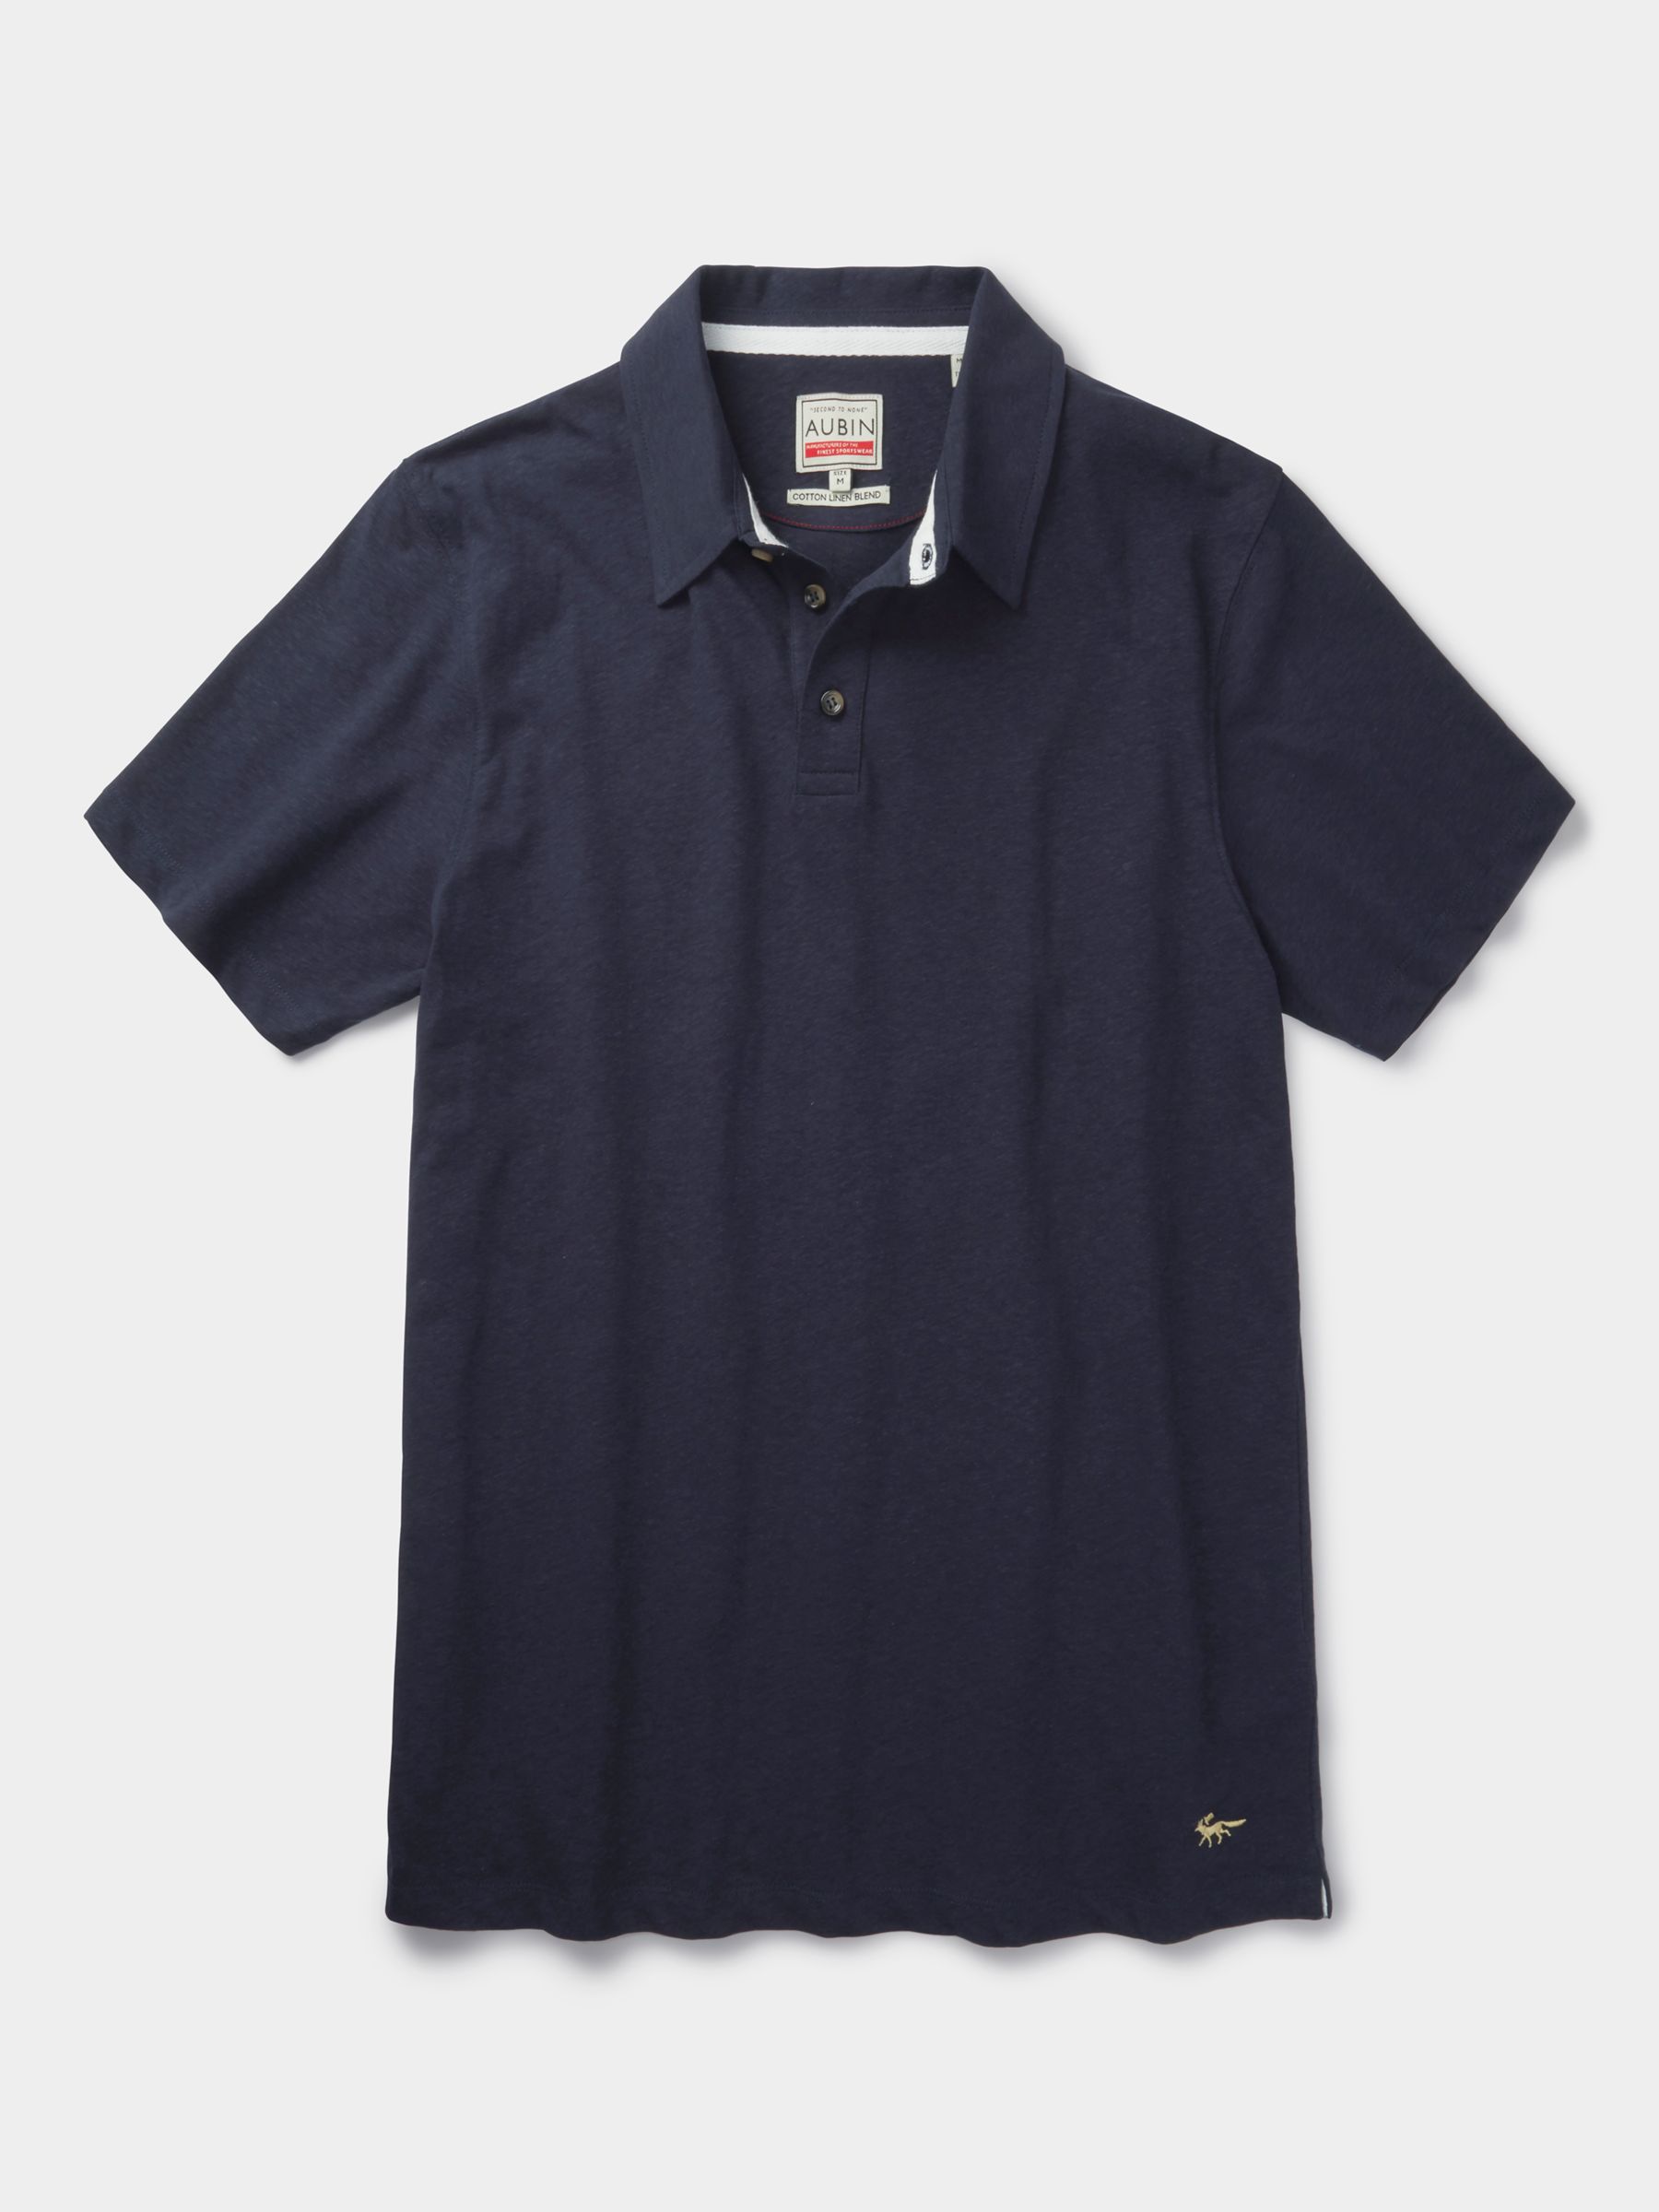 Aubin Arnold Linen Blend Polo Shirt, Navy, S